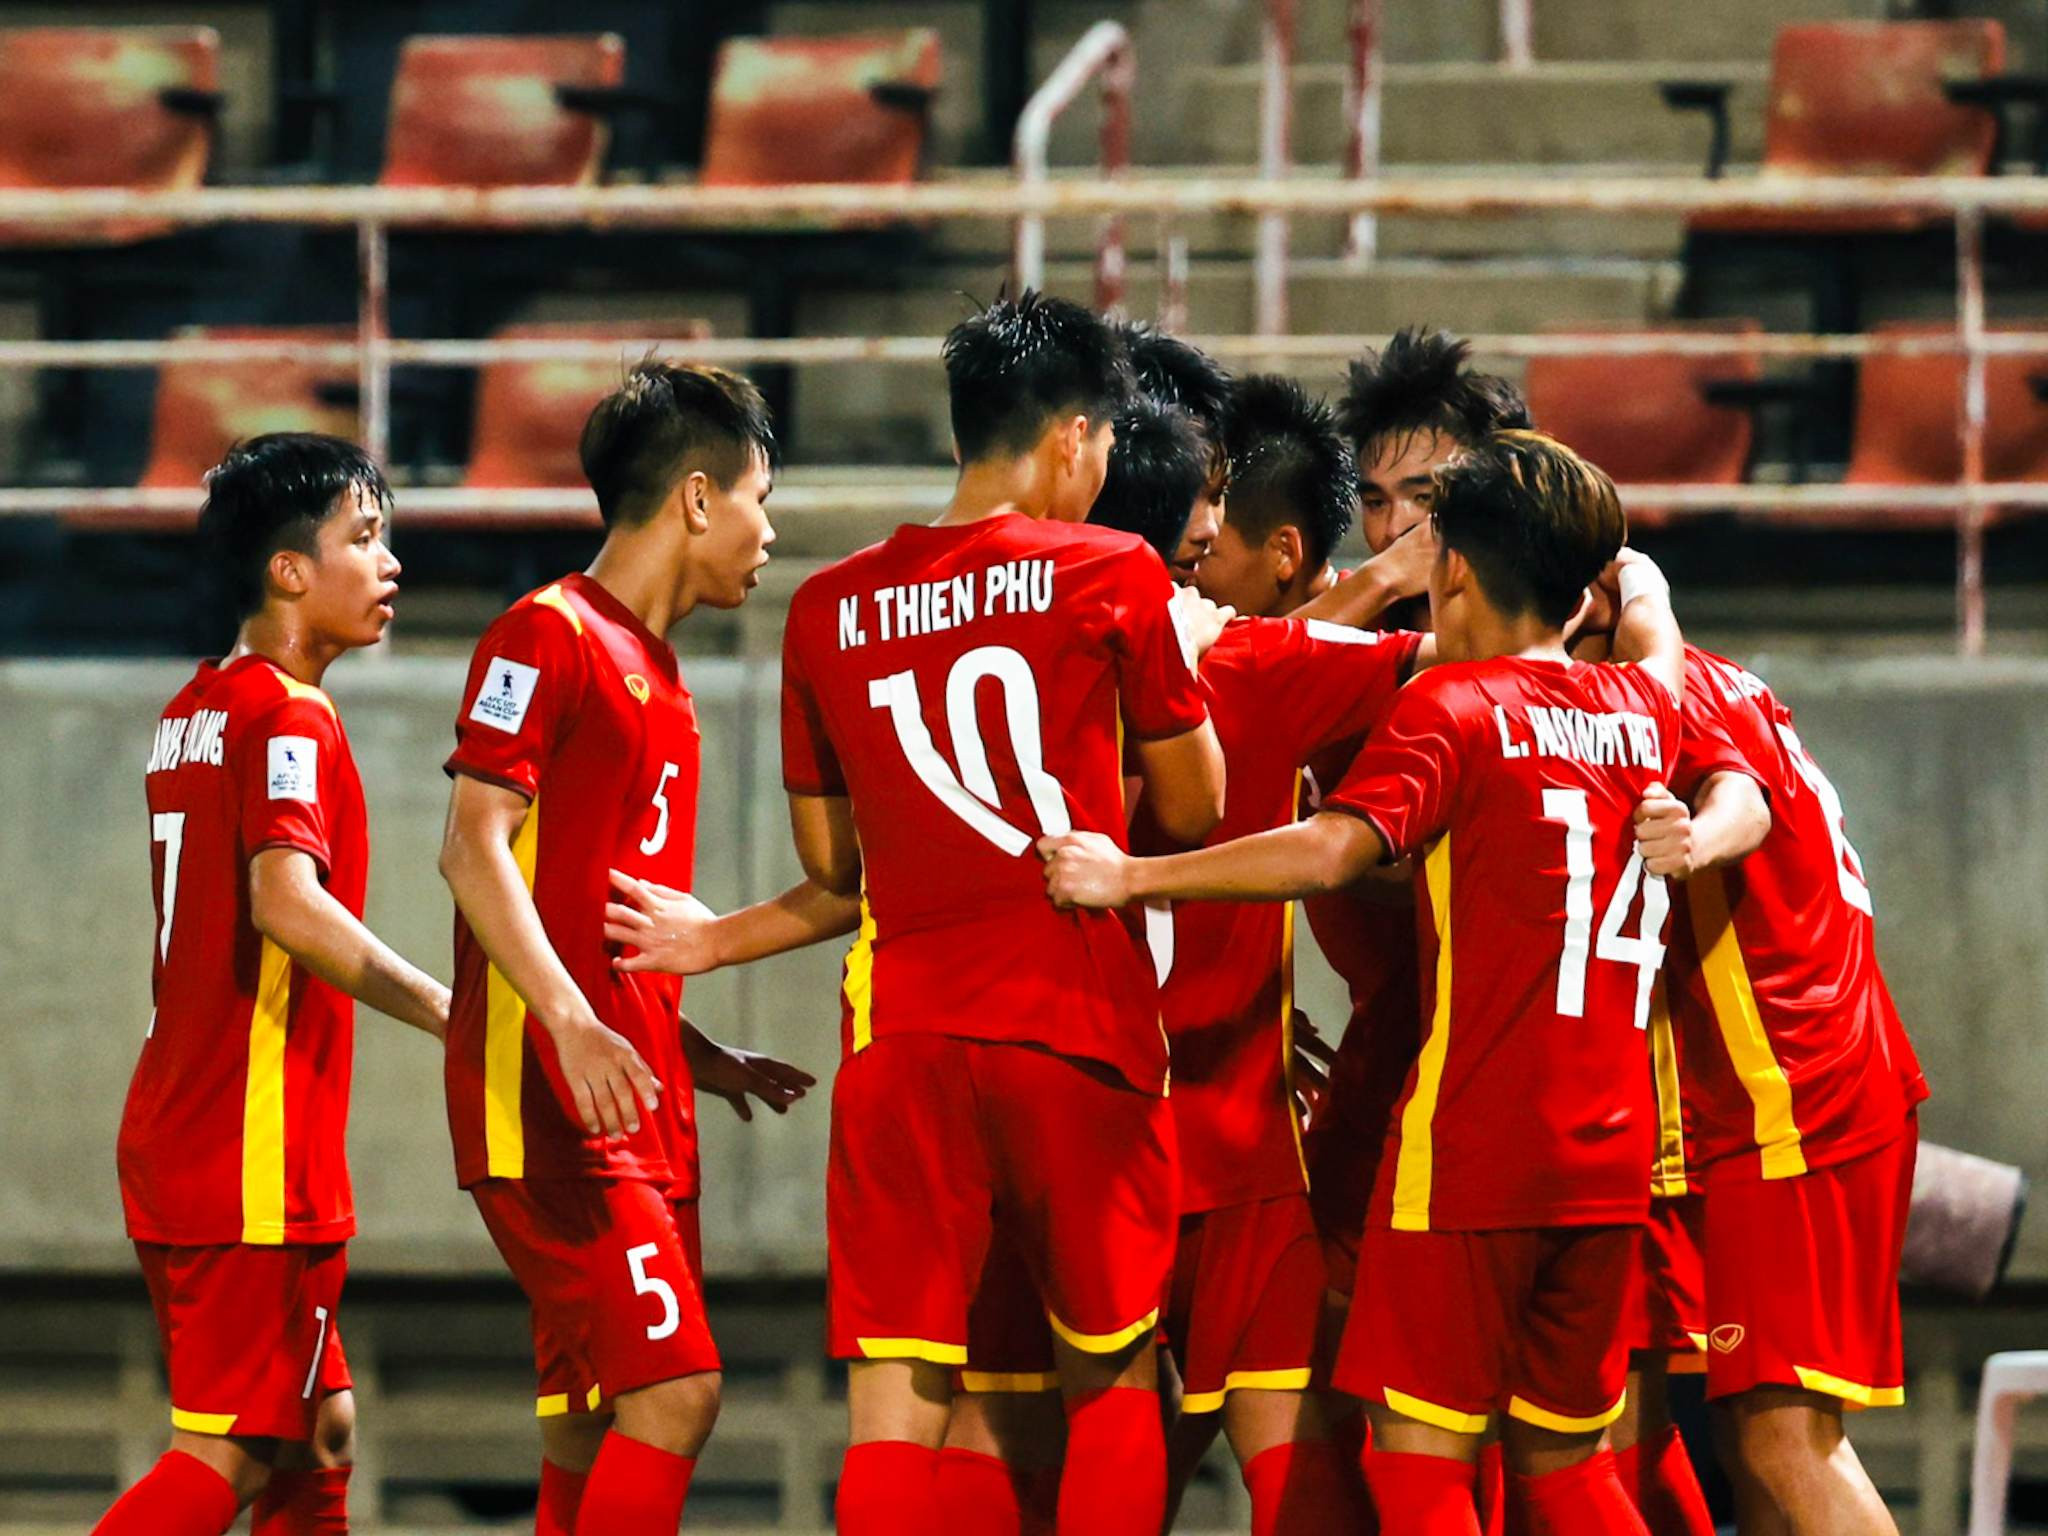 Nhận định U17 Việt Nam vs U17 Uzbekistan: Lách khe cửa hẹp - Bóng Đá